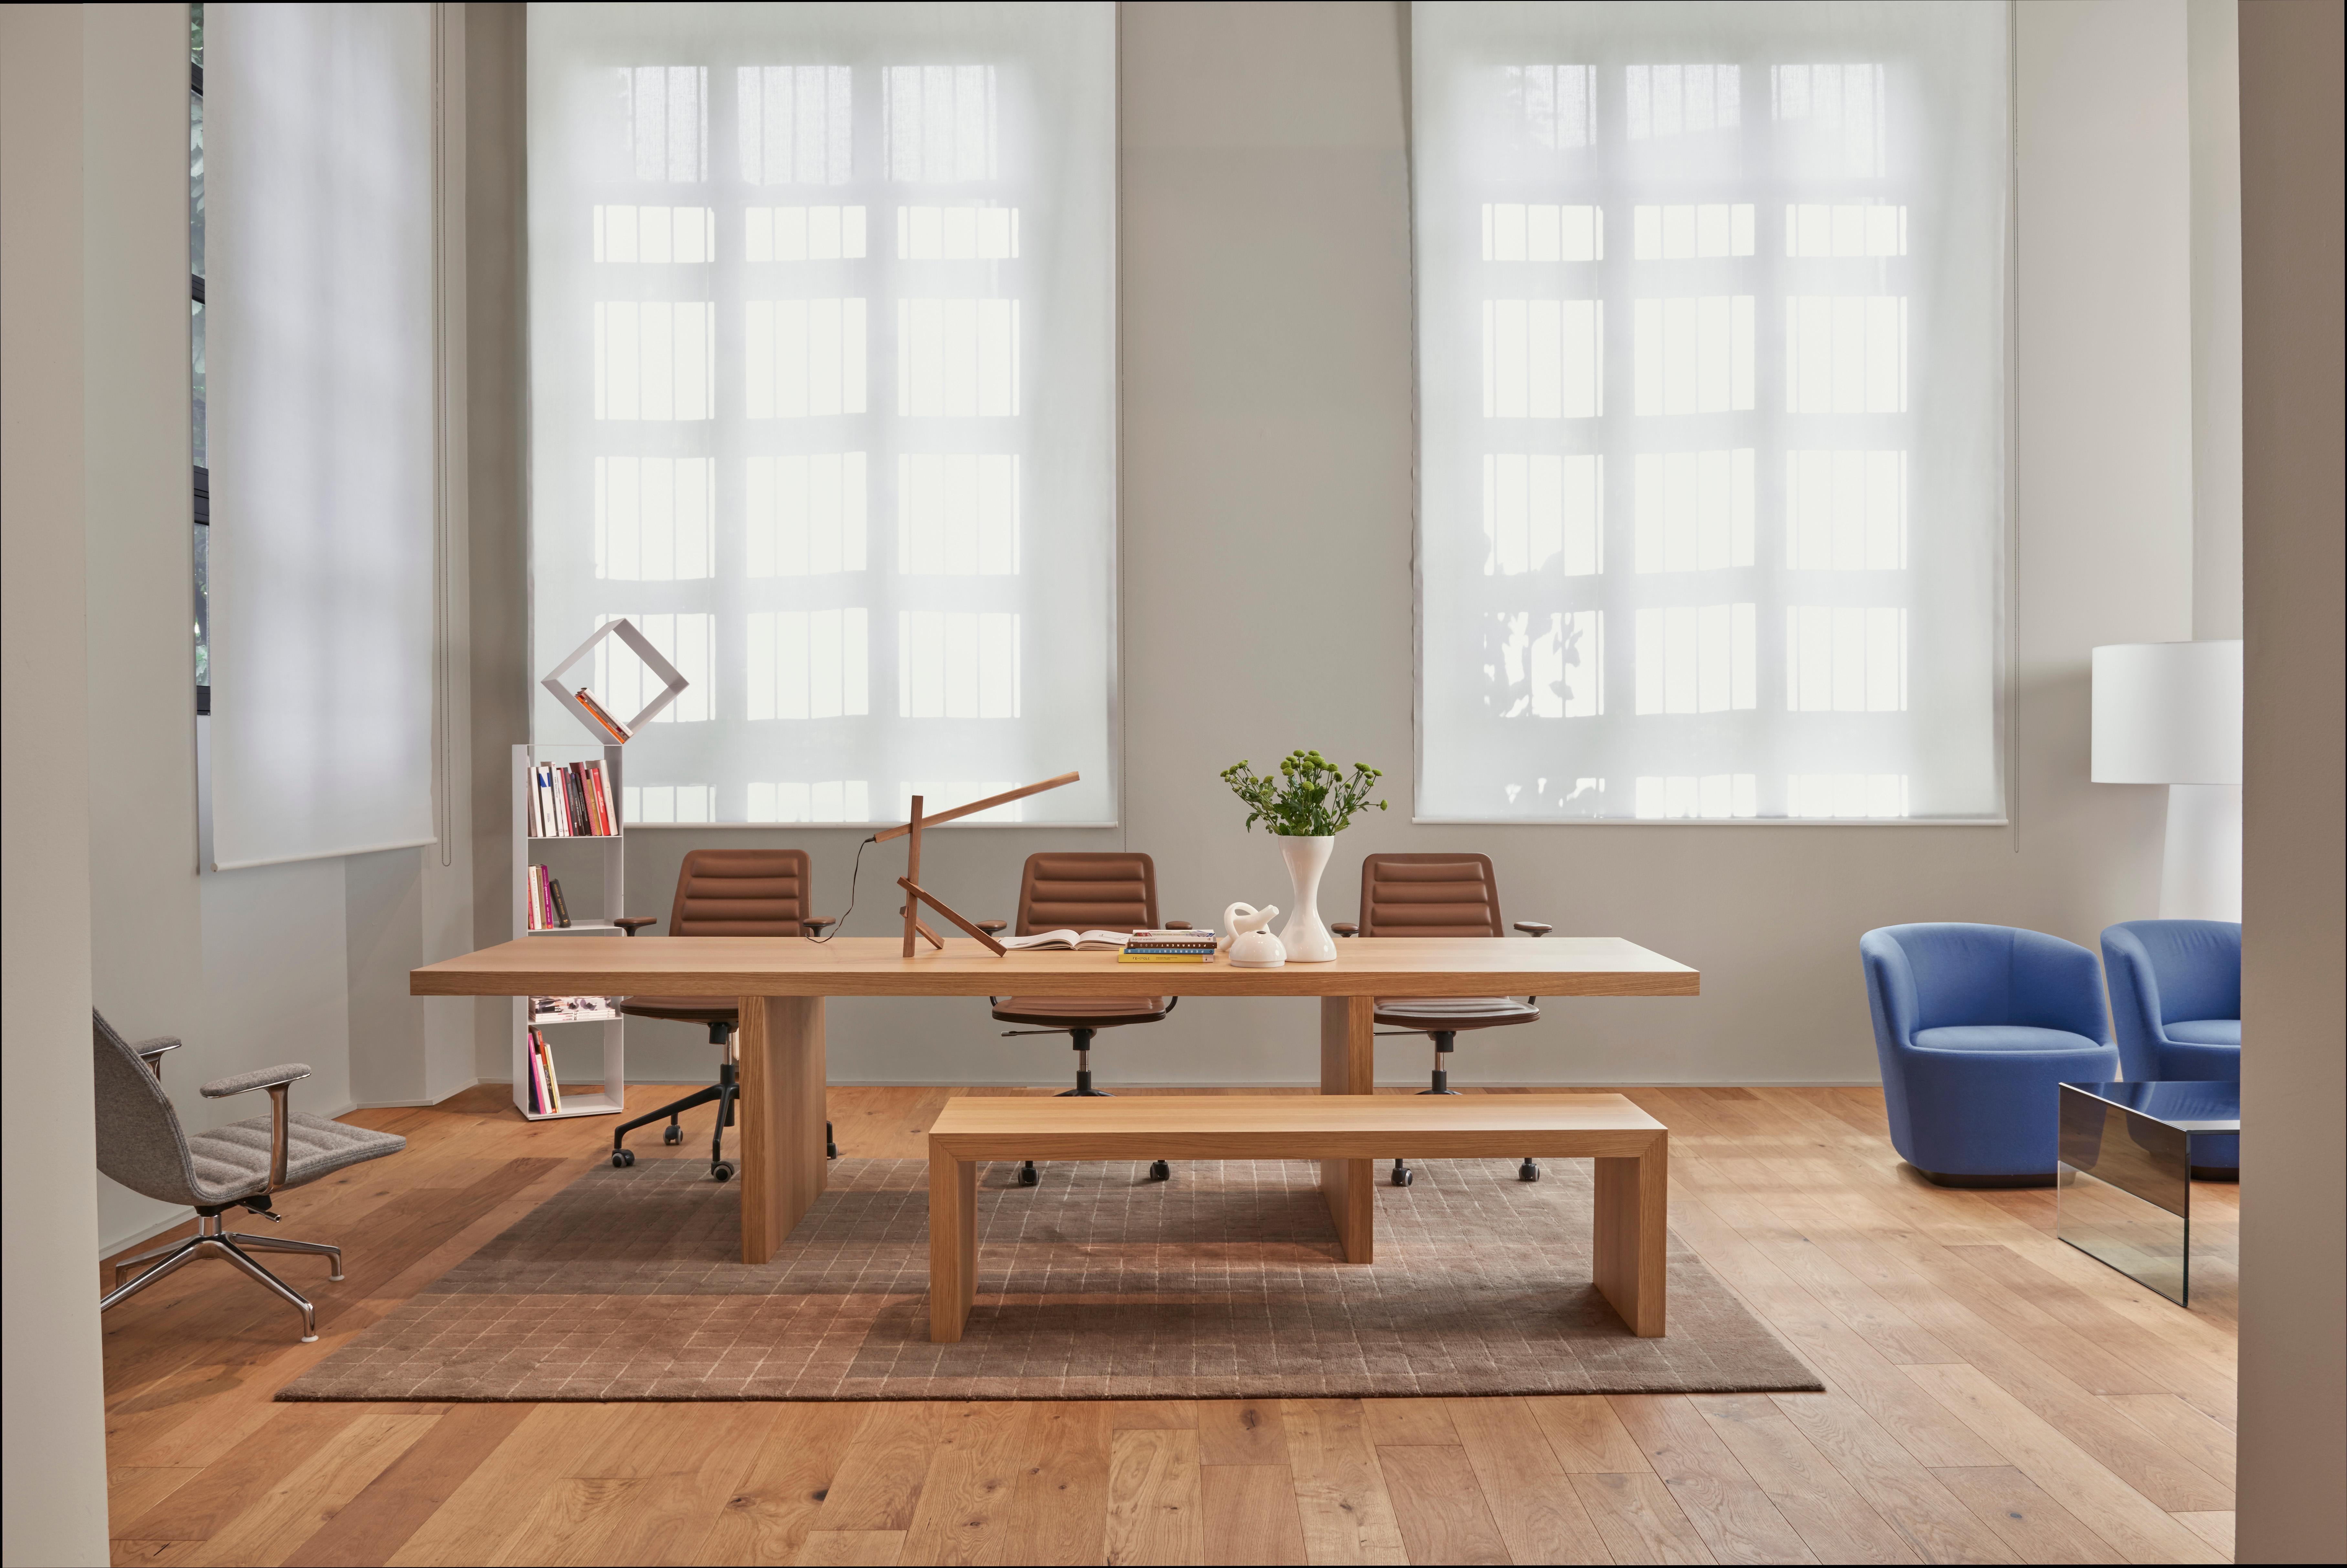 La table Millenium Hope, du designer Claudio Silvestrin, est une union monolithique de sapin alvéolé et de fibres de conglomérat de densité moyenne. Cette table, composée d'éléments verticaux recouverts d'un plateau horizontal de même hauteur et